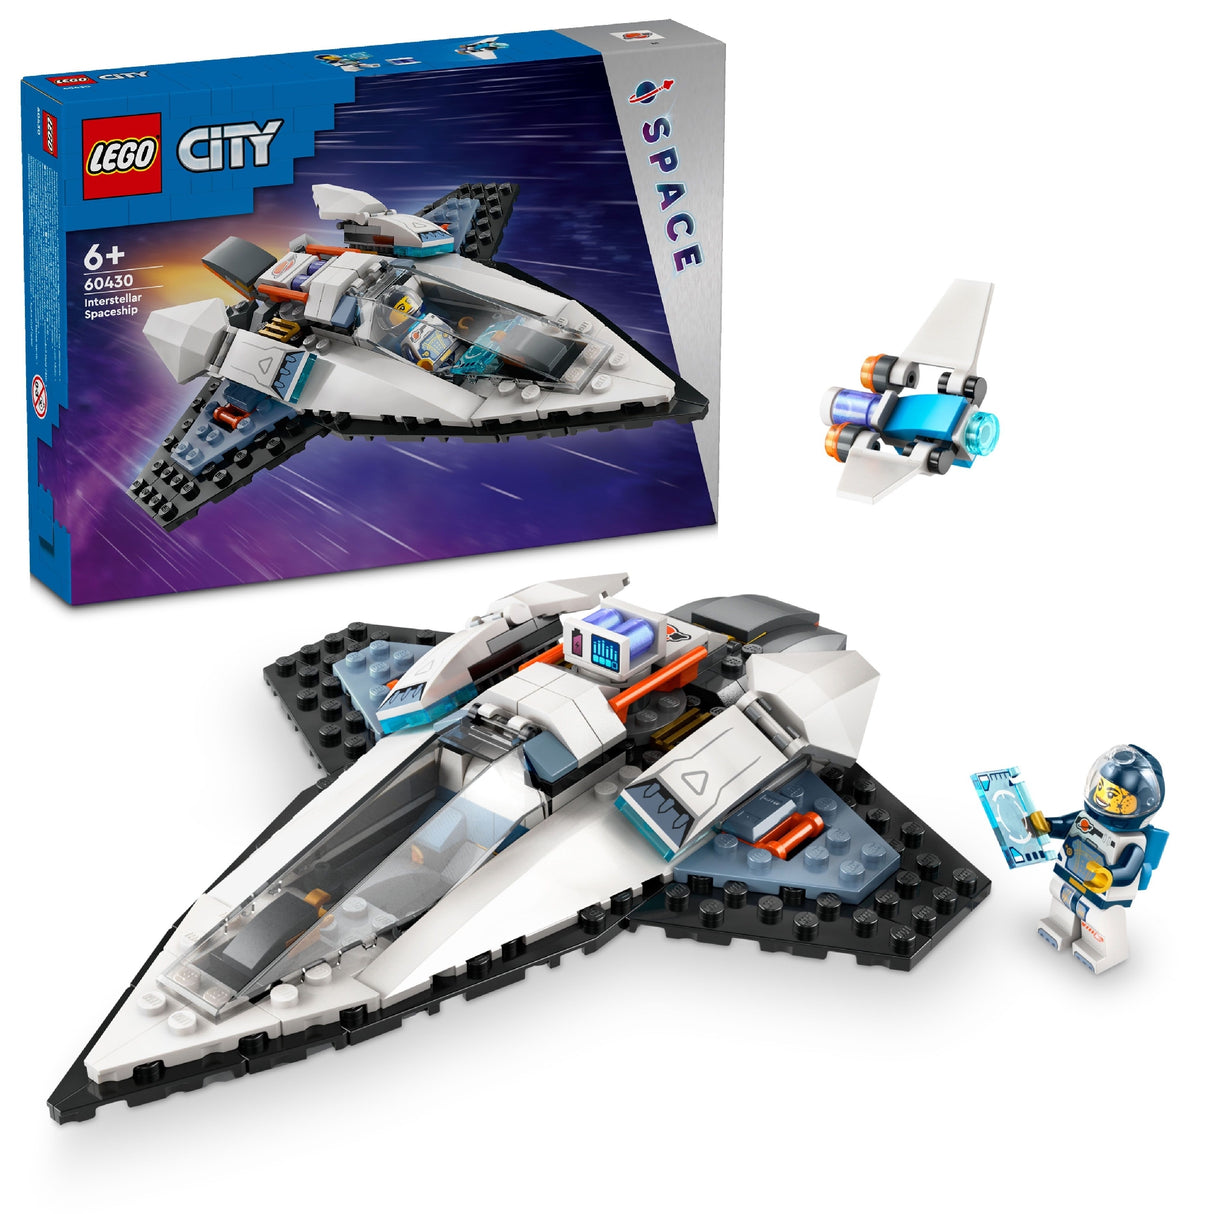 LEGO CITY INTERSTELLAR SPACESHIP 60430 AGE: 6+